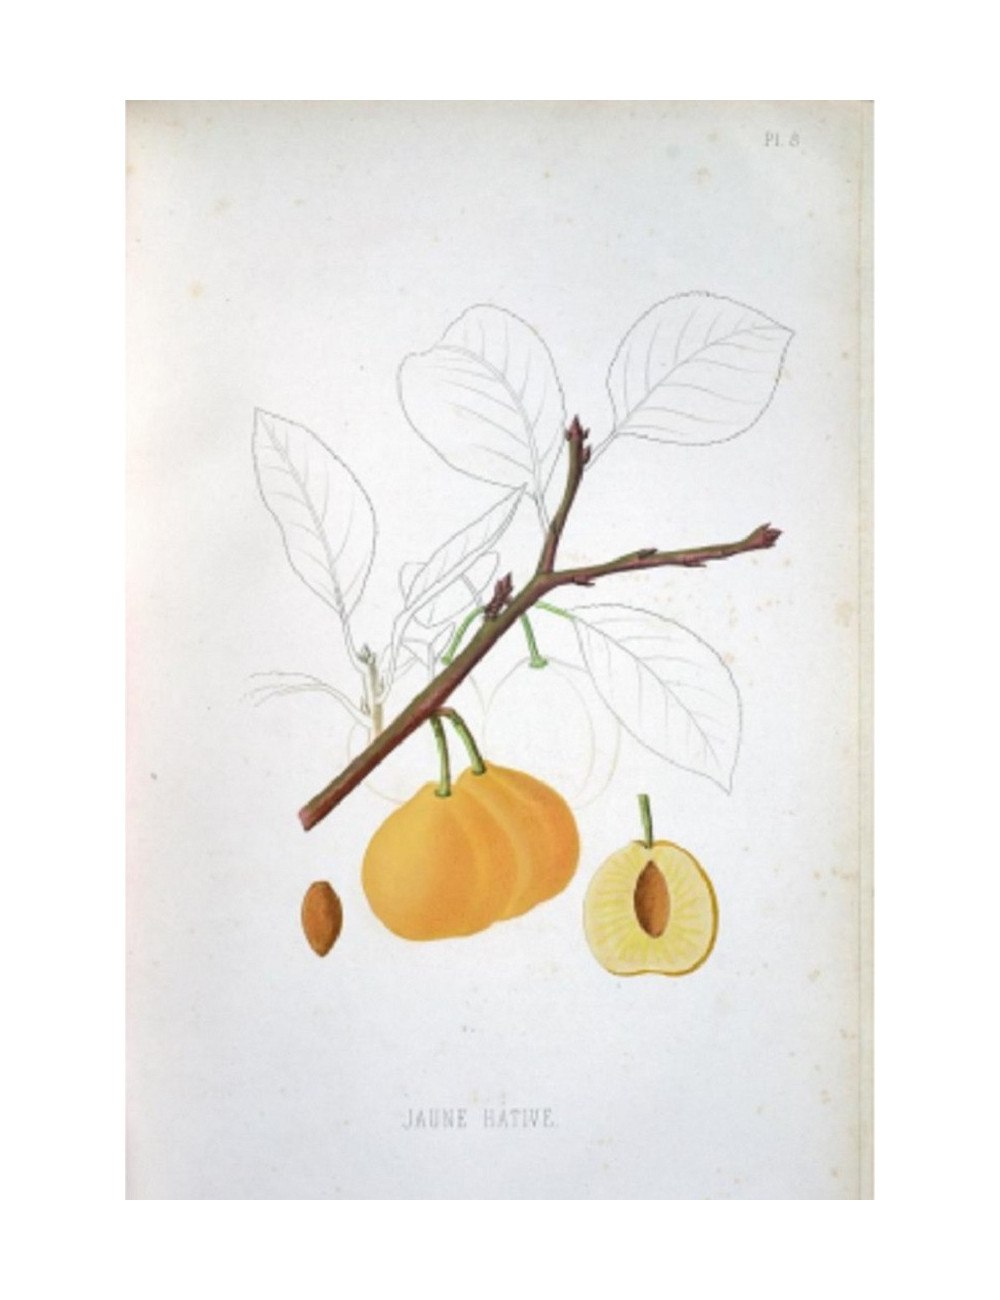 PRUNIER ABRICOT (Prunus domestica)